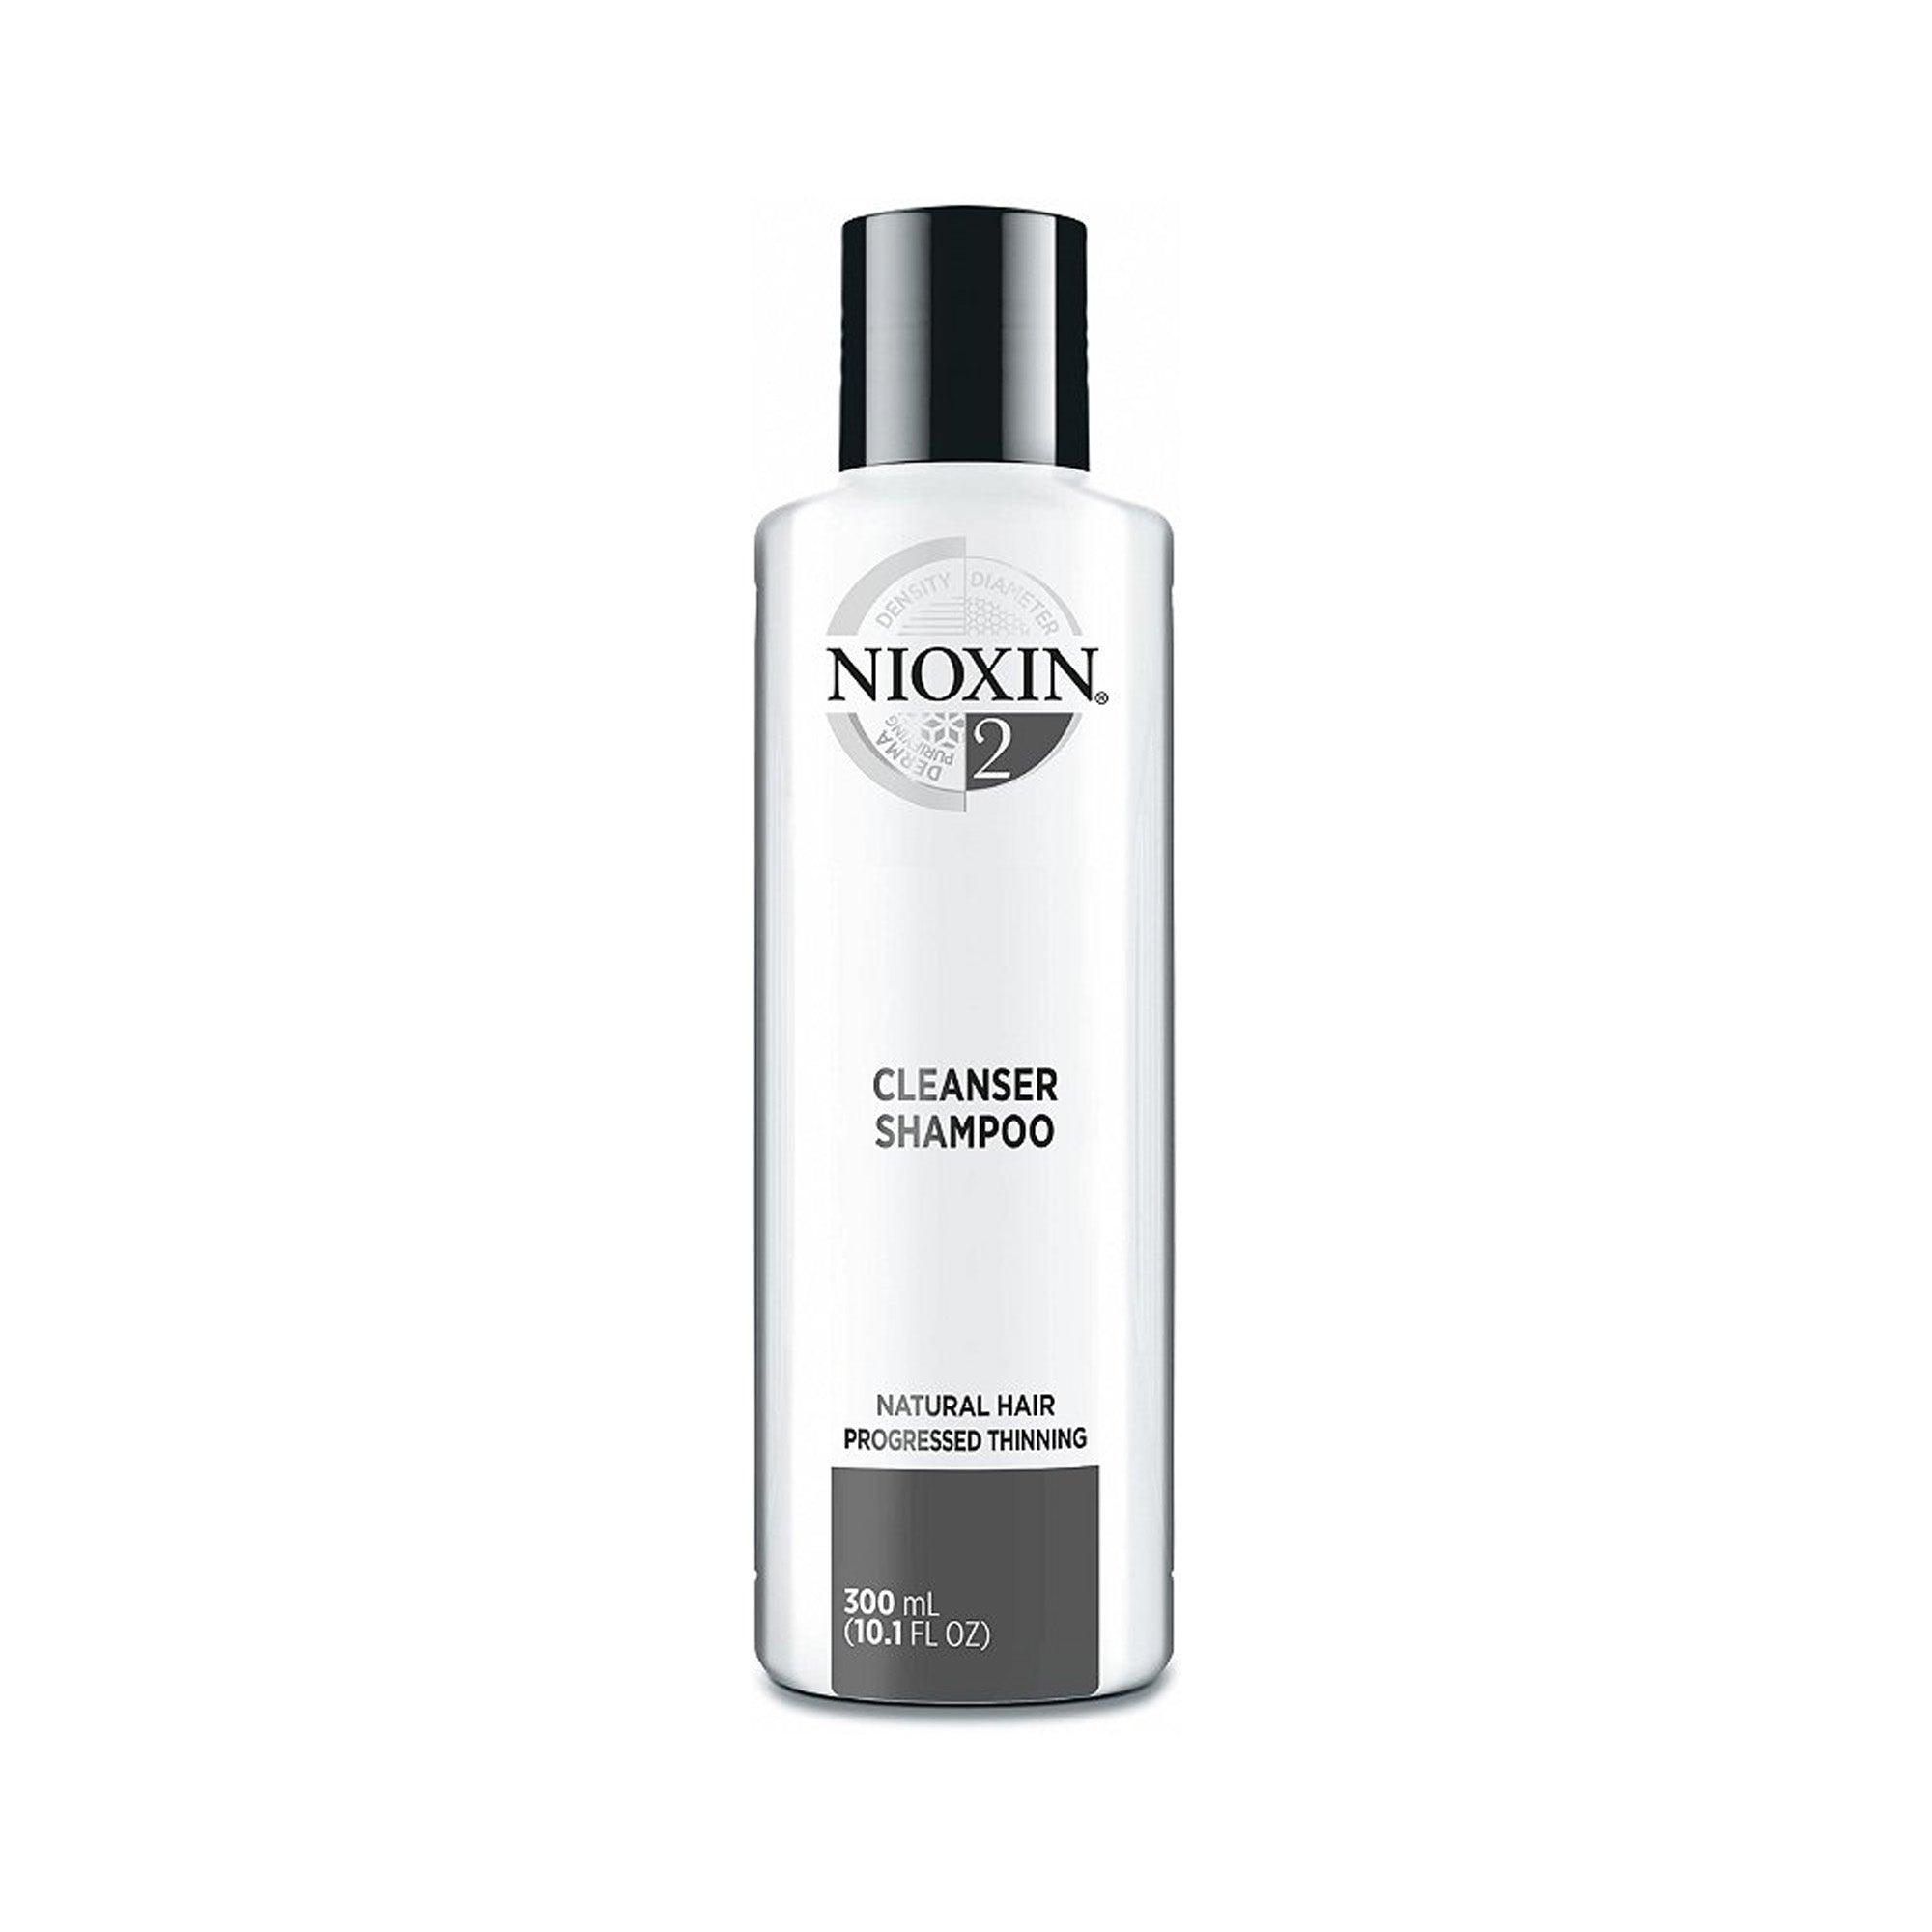 Nioxin Cleanser Shampoo System 2 10.1oz / 300ml